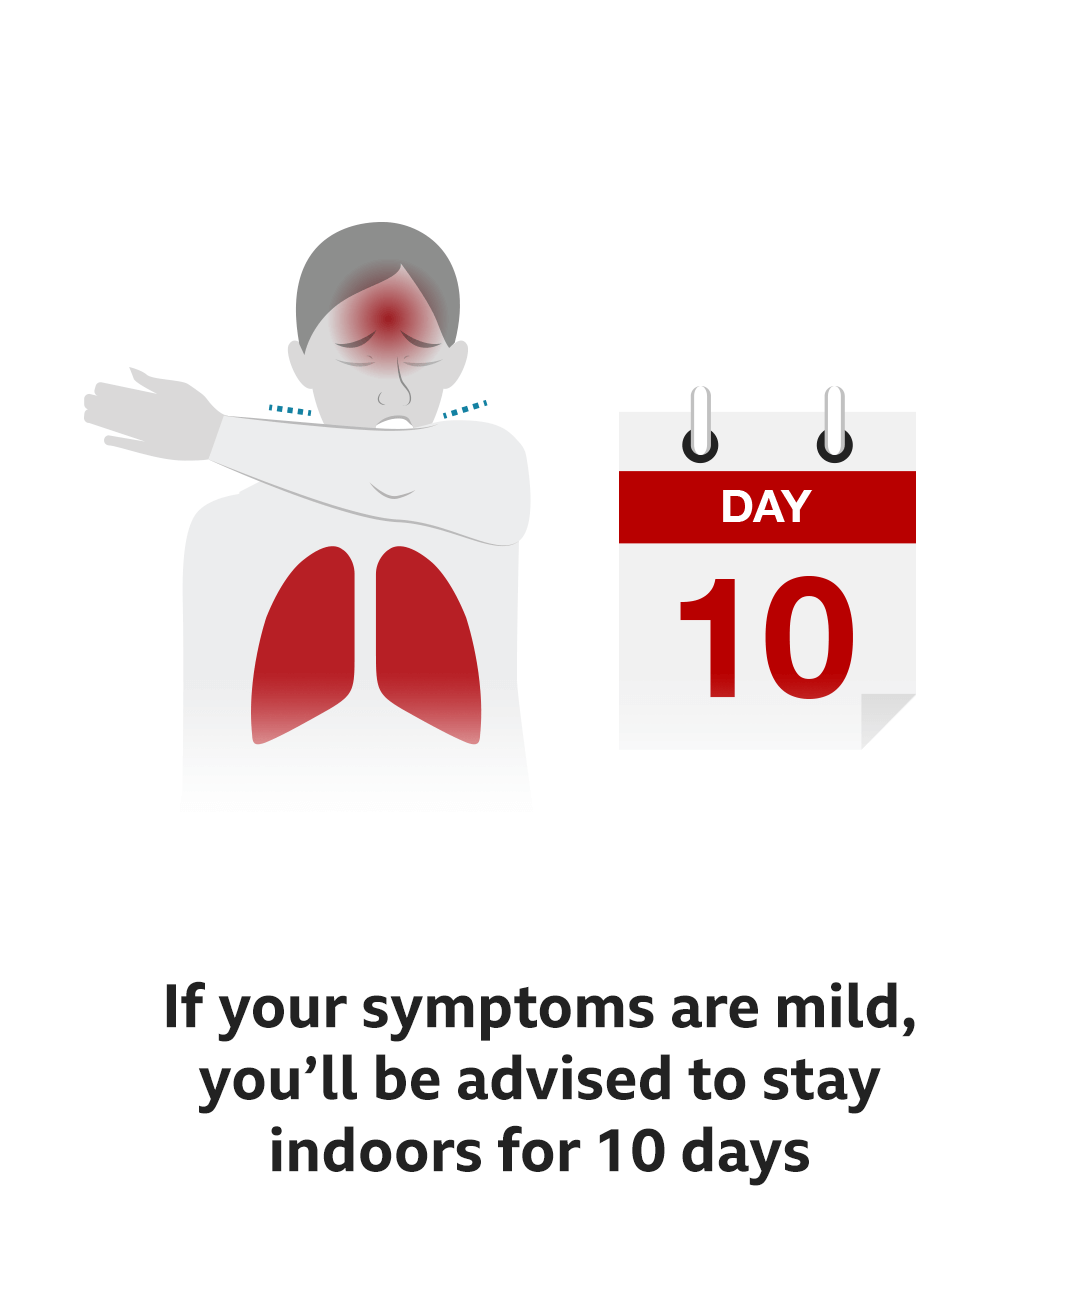 Если ваши симптомы легкие, вам будет рекомендовано оставаться в помещении в течение 10 дней.